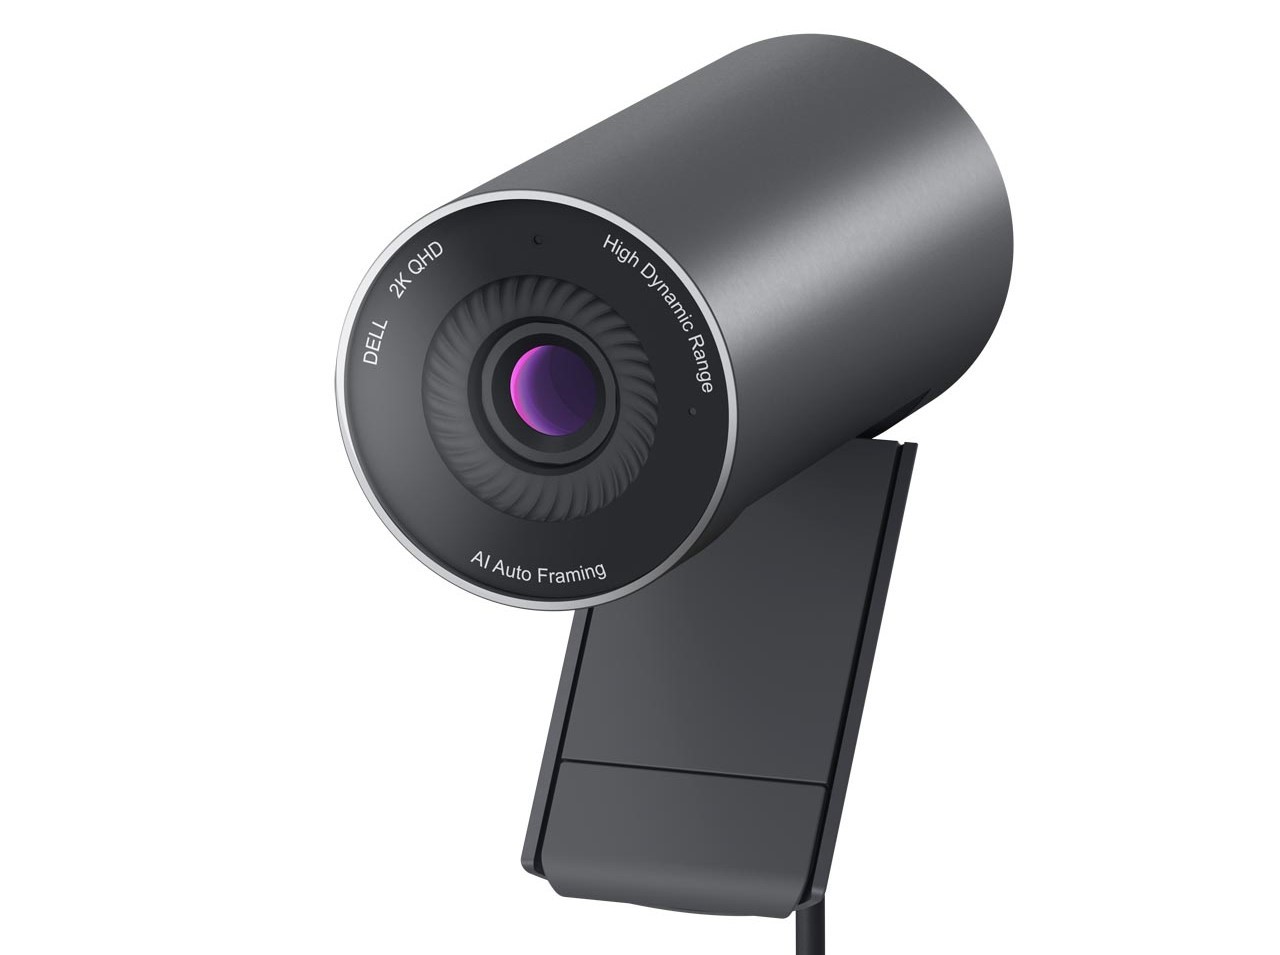 Dell Webcam Pro WB5023